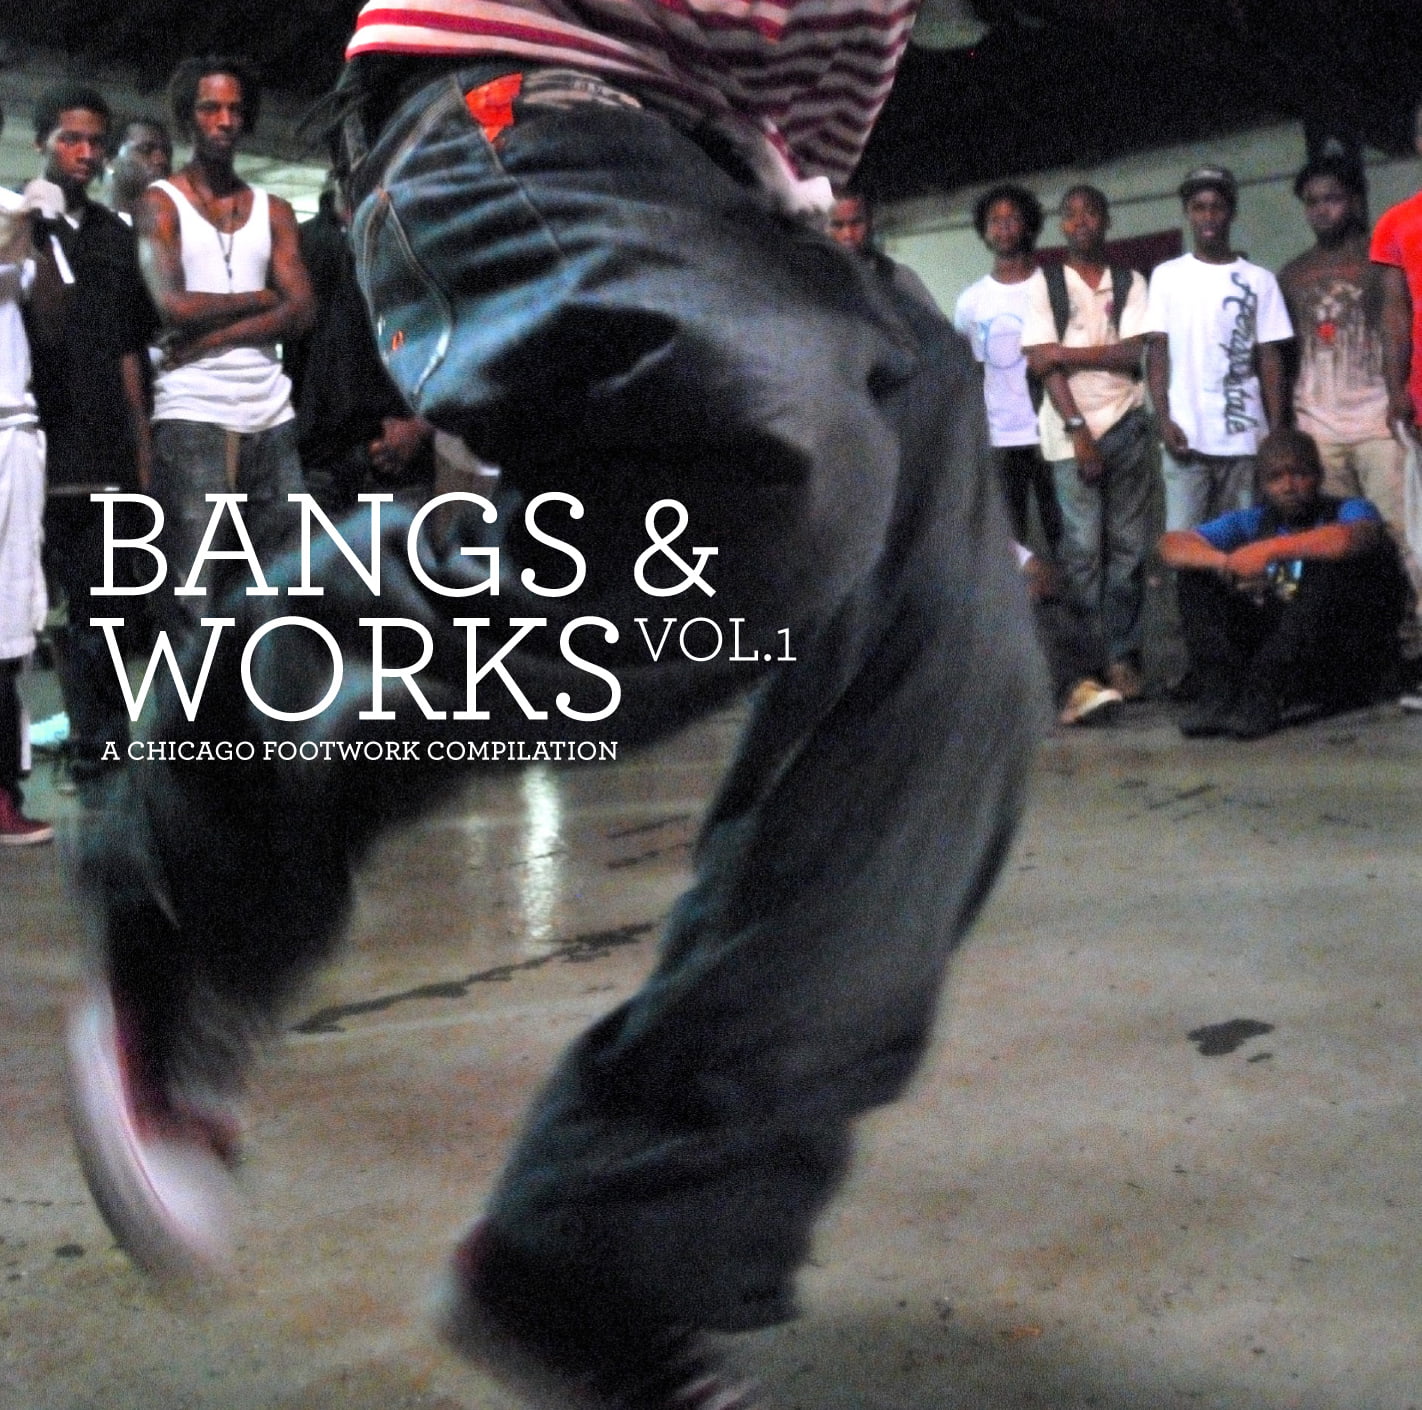 La compilación de Juke/Footwork: “Bangs & Works Vol.1'', re-prensada nuevamente...